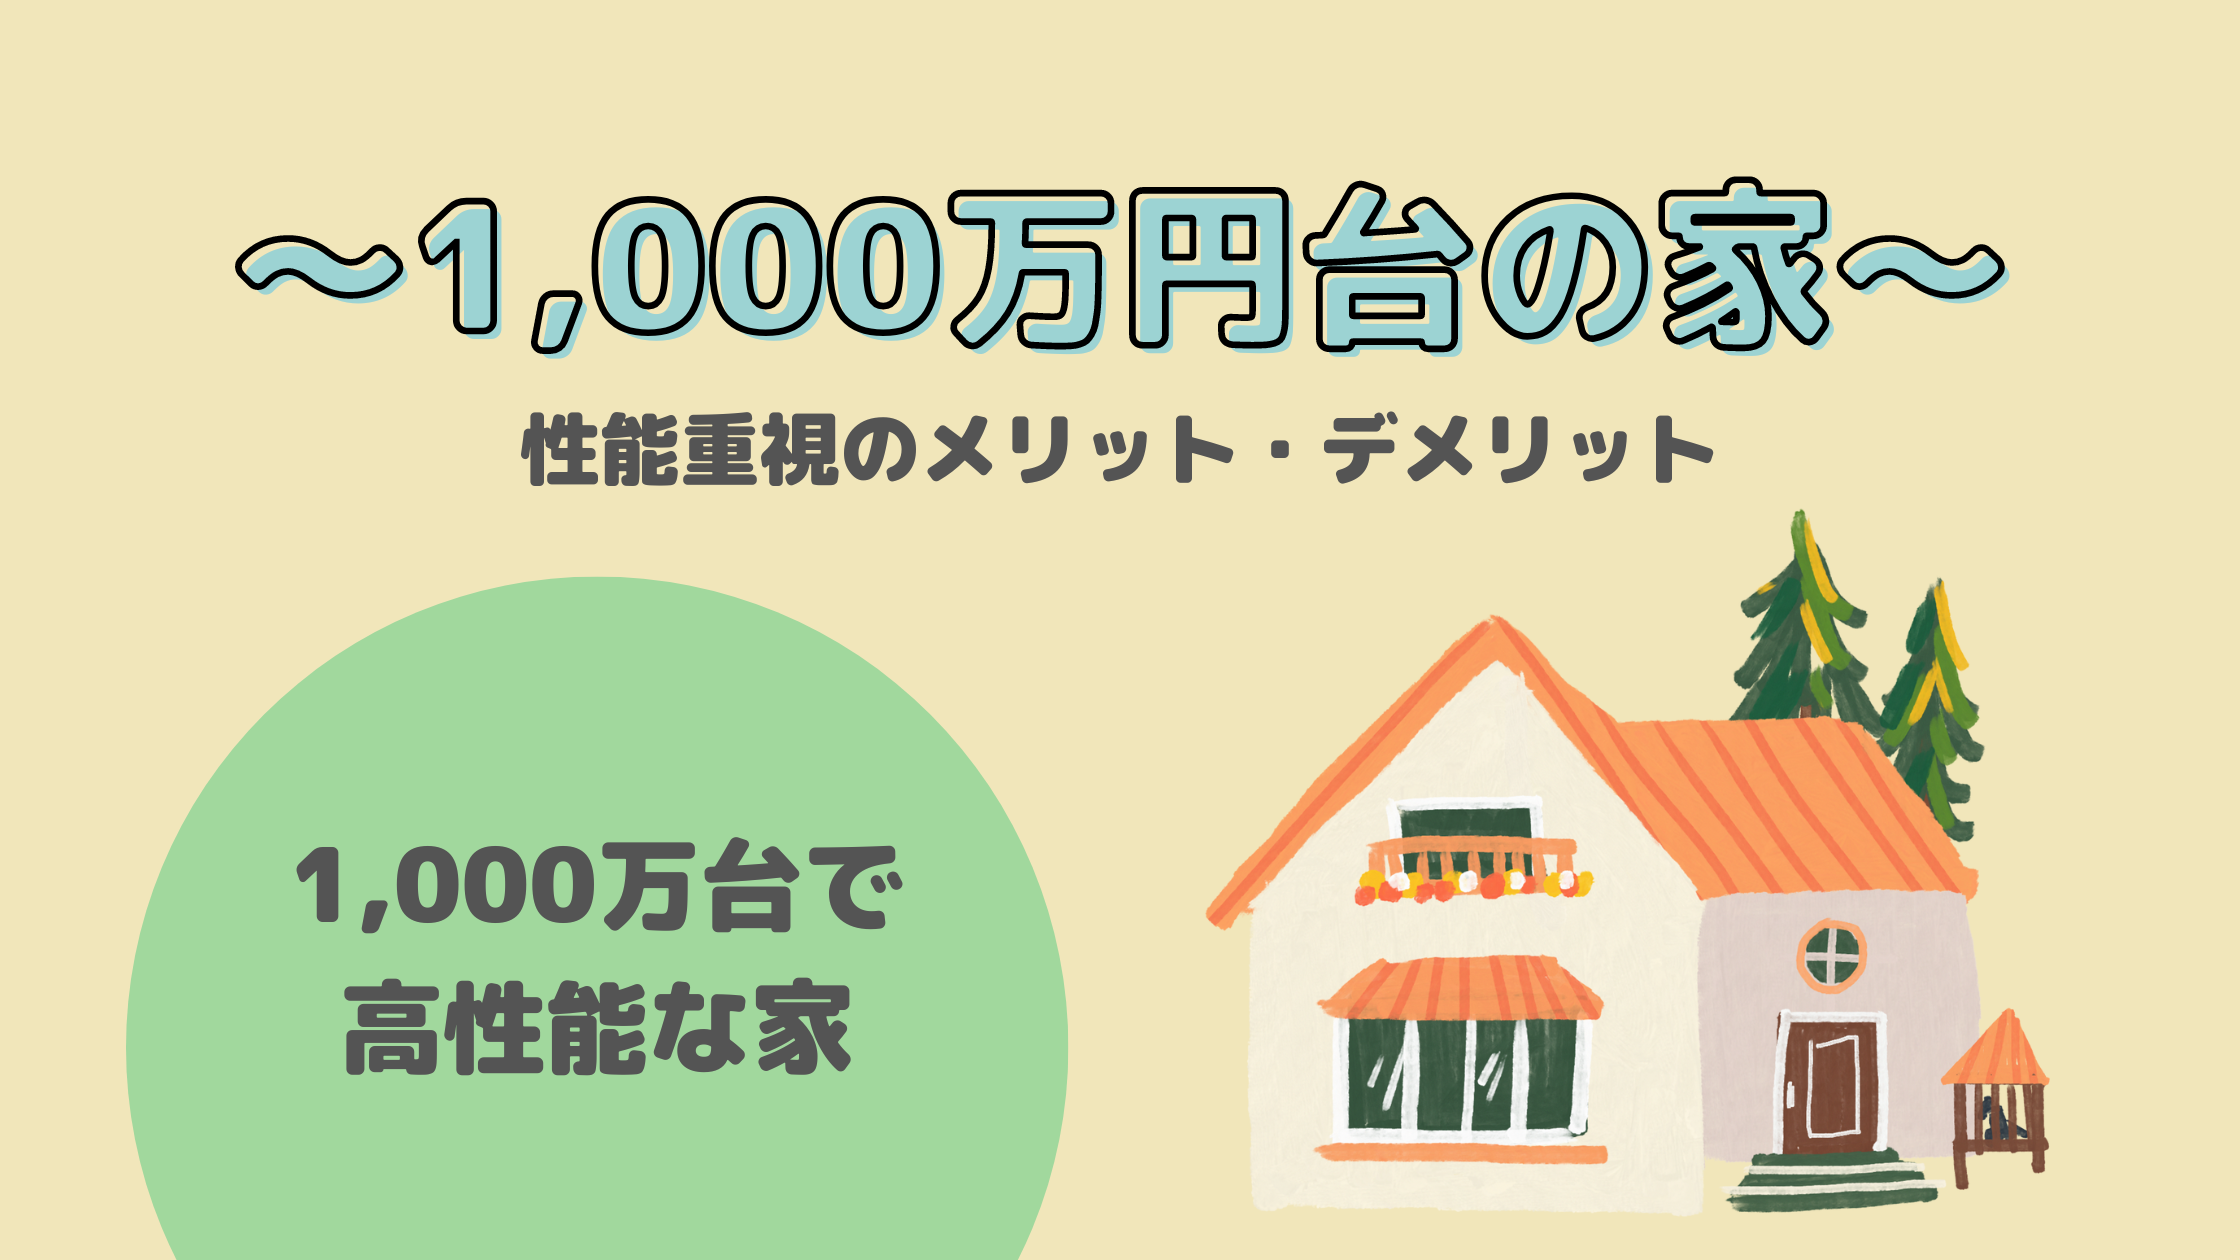 スタジオそらでは1,000万円台で高性能な家を実現します。 ご興味を持たれた方、是非お気軽にお問合せください。